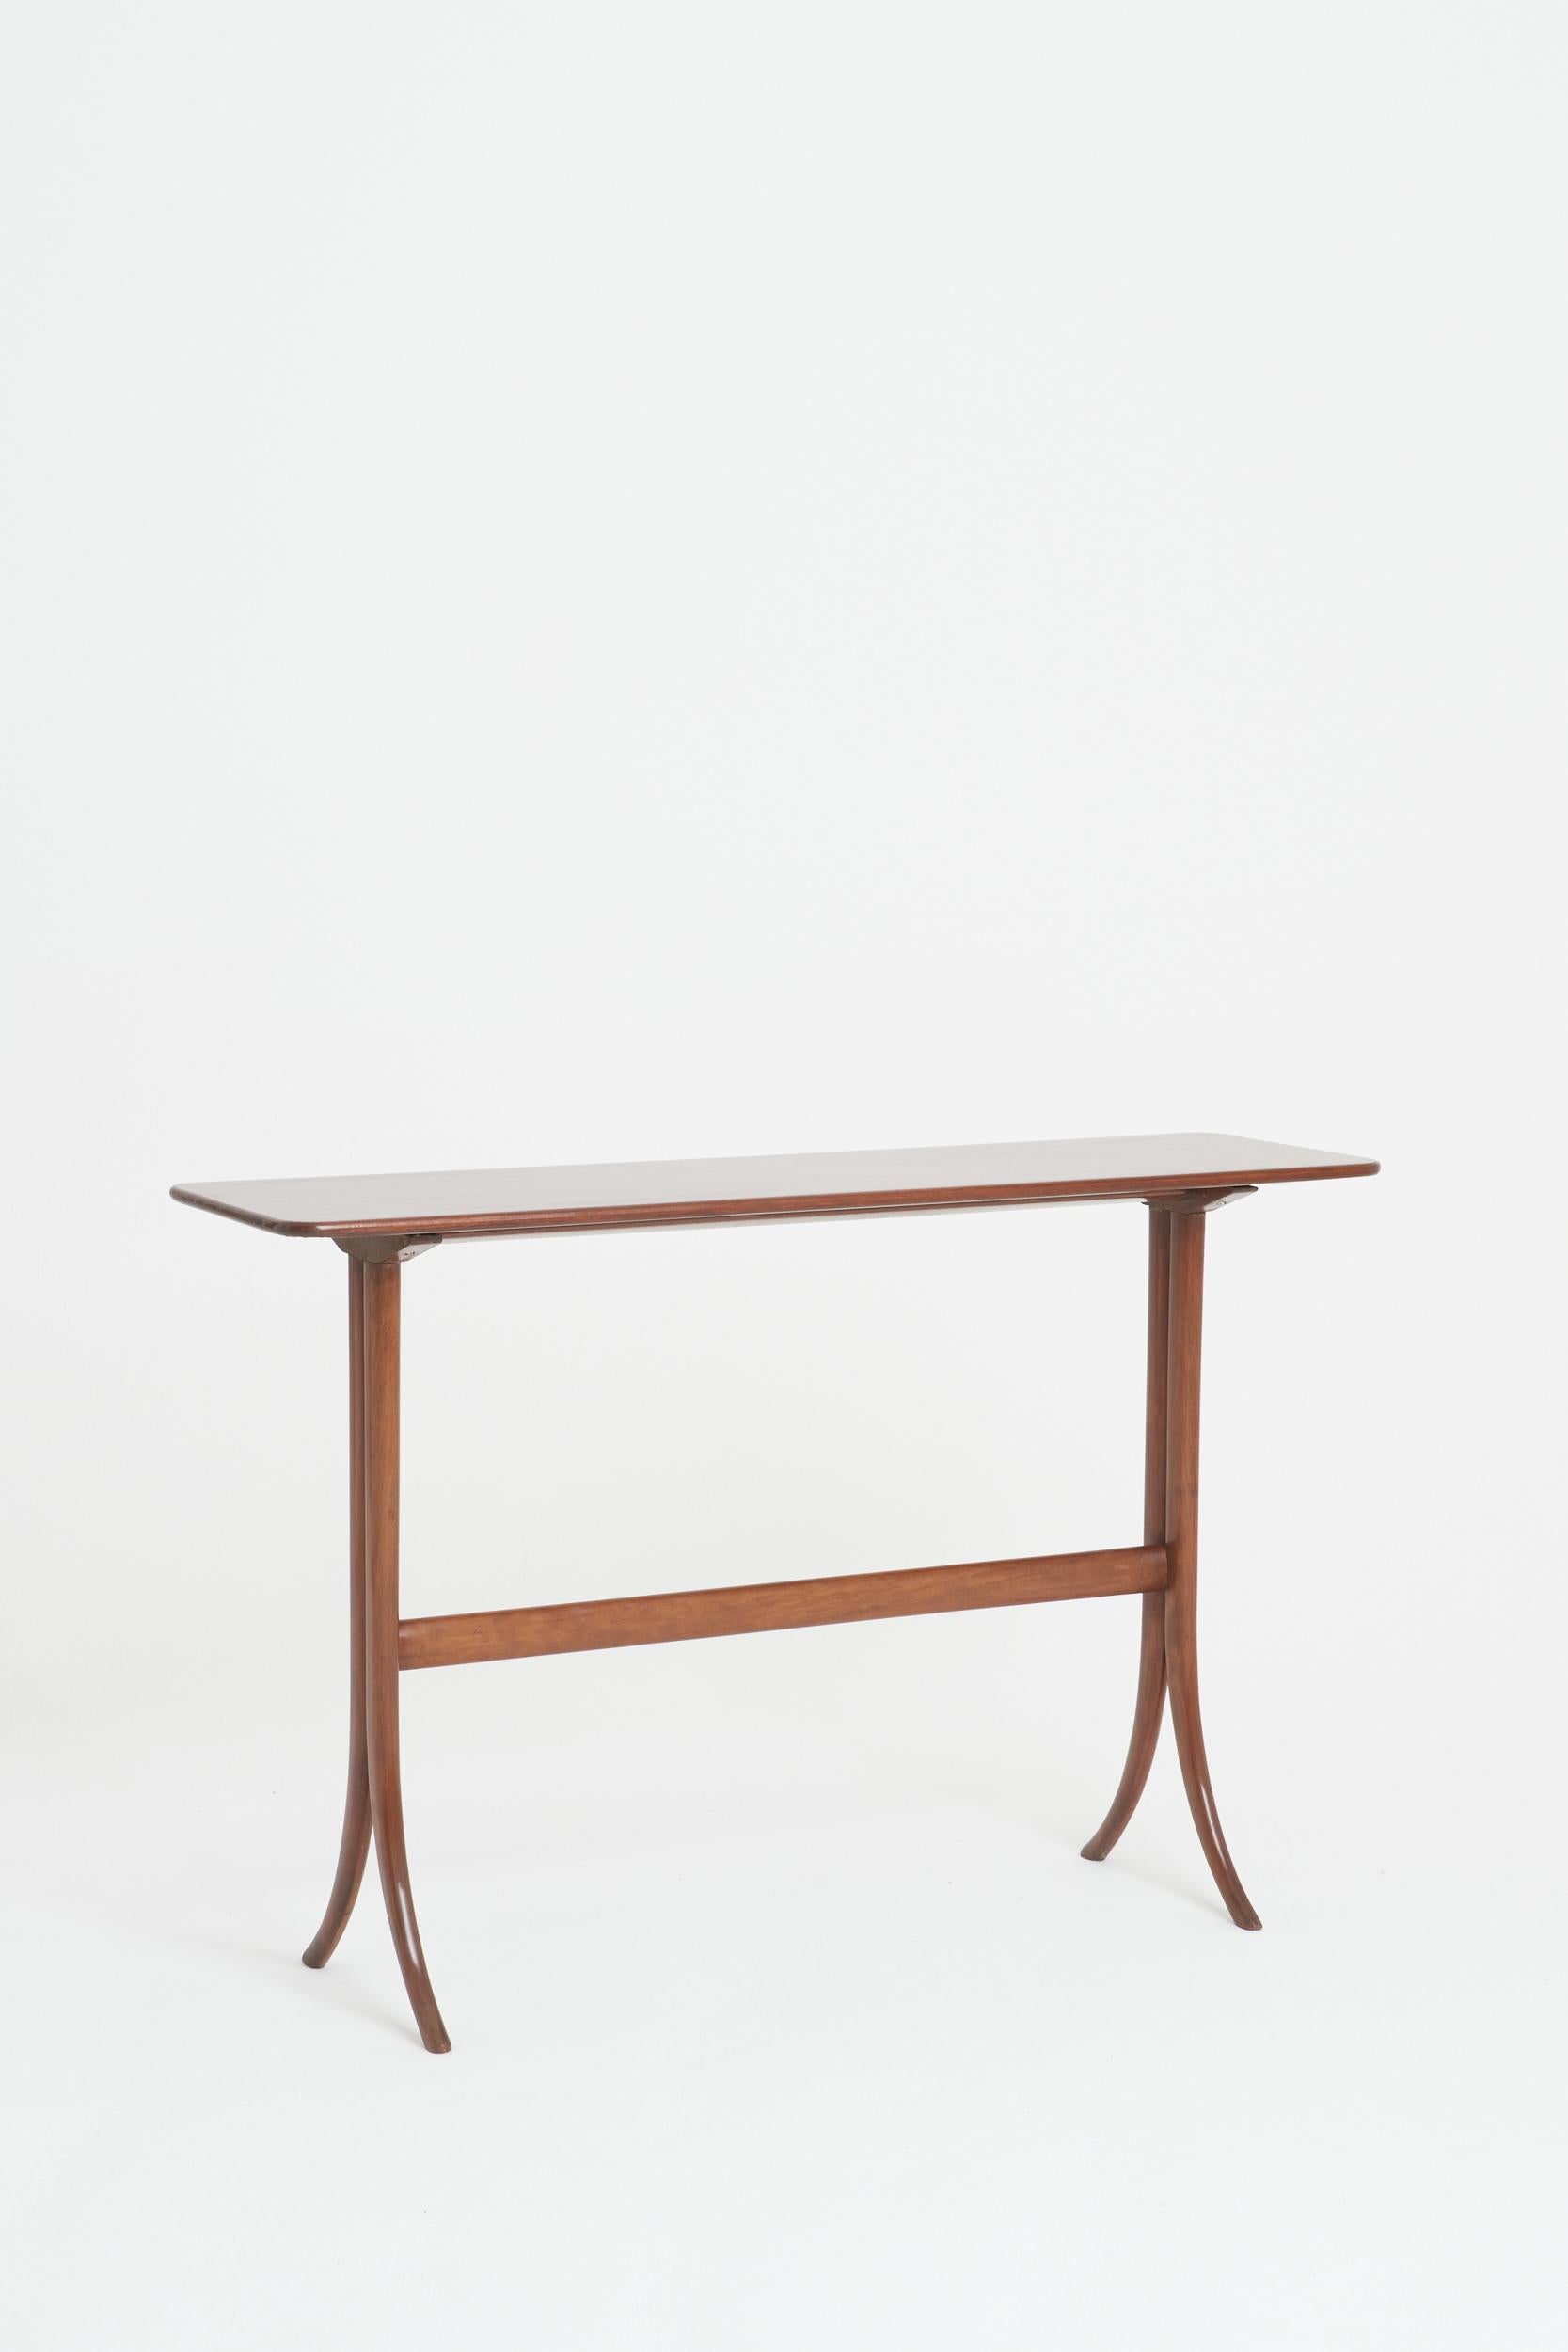 A mahogany console table
Italy, mid 20th Century